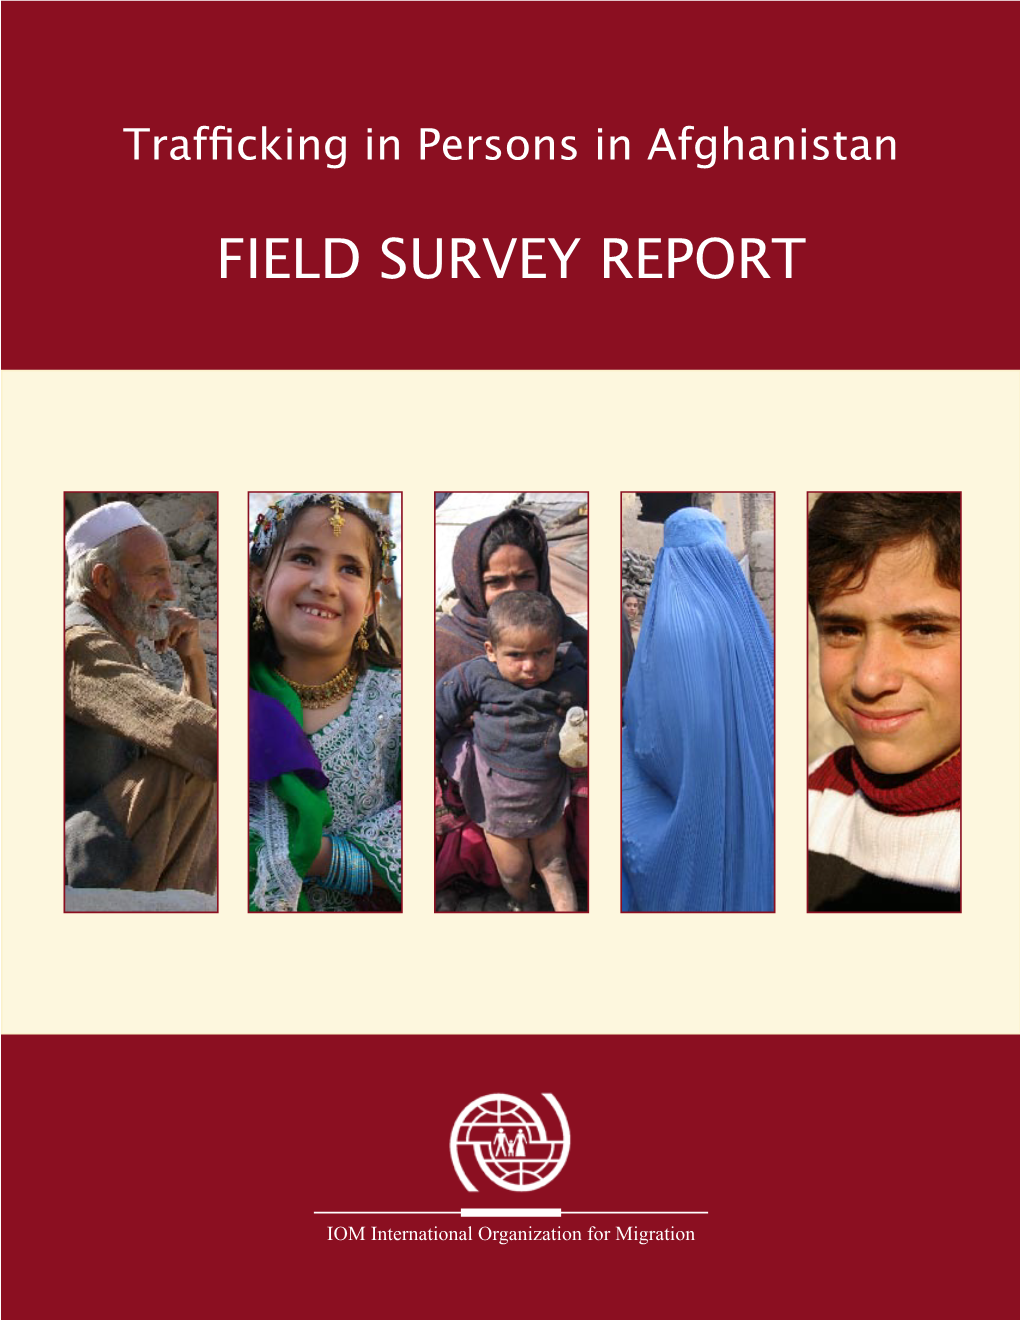 Field Survey Report